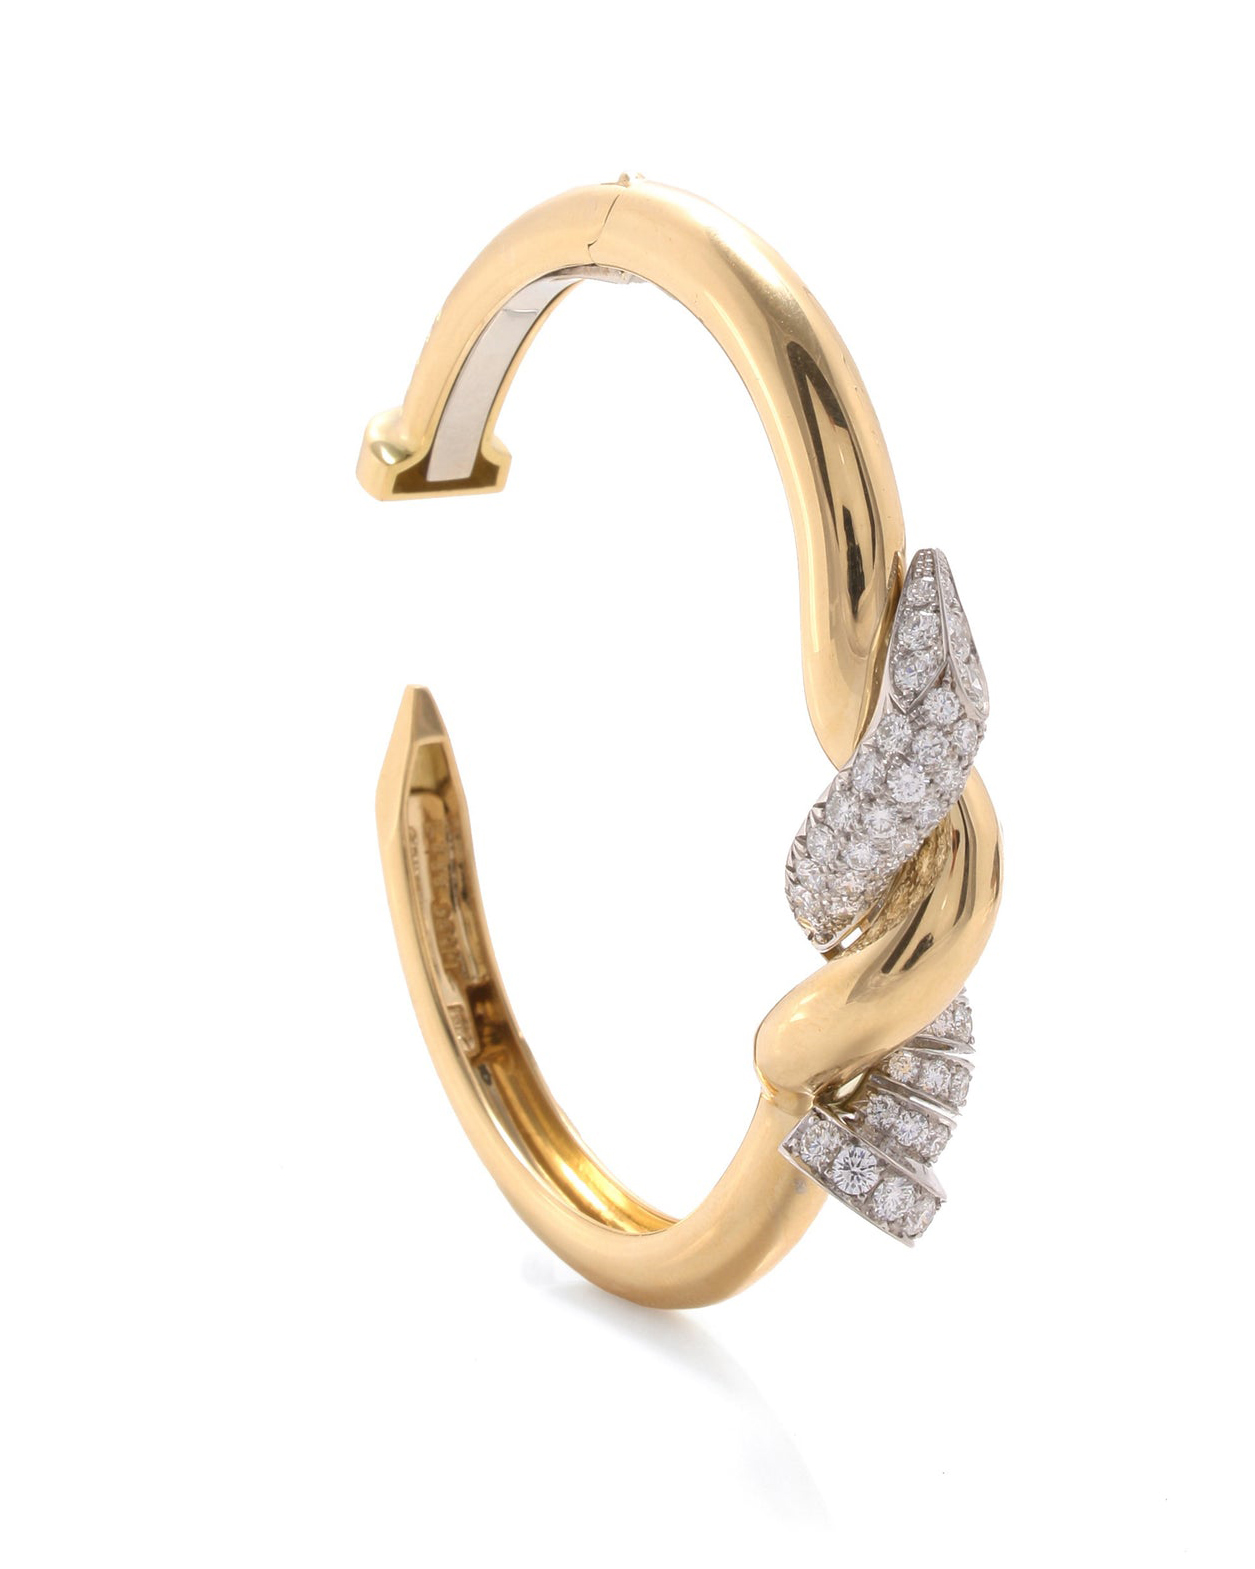 cancer zodiac jewelry natural diamond jewelry style